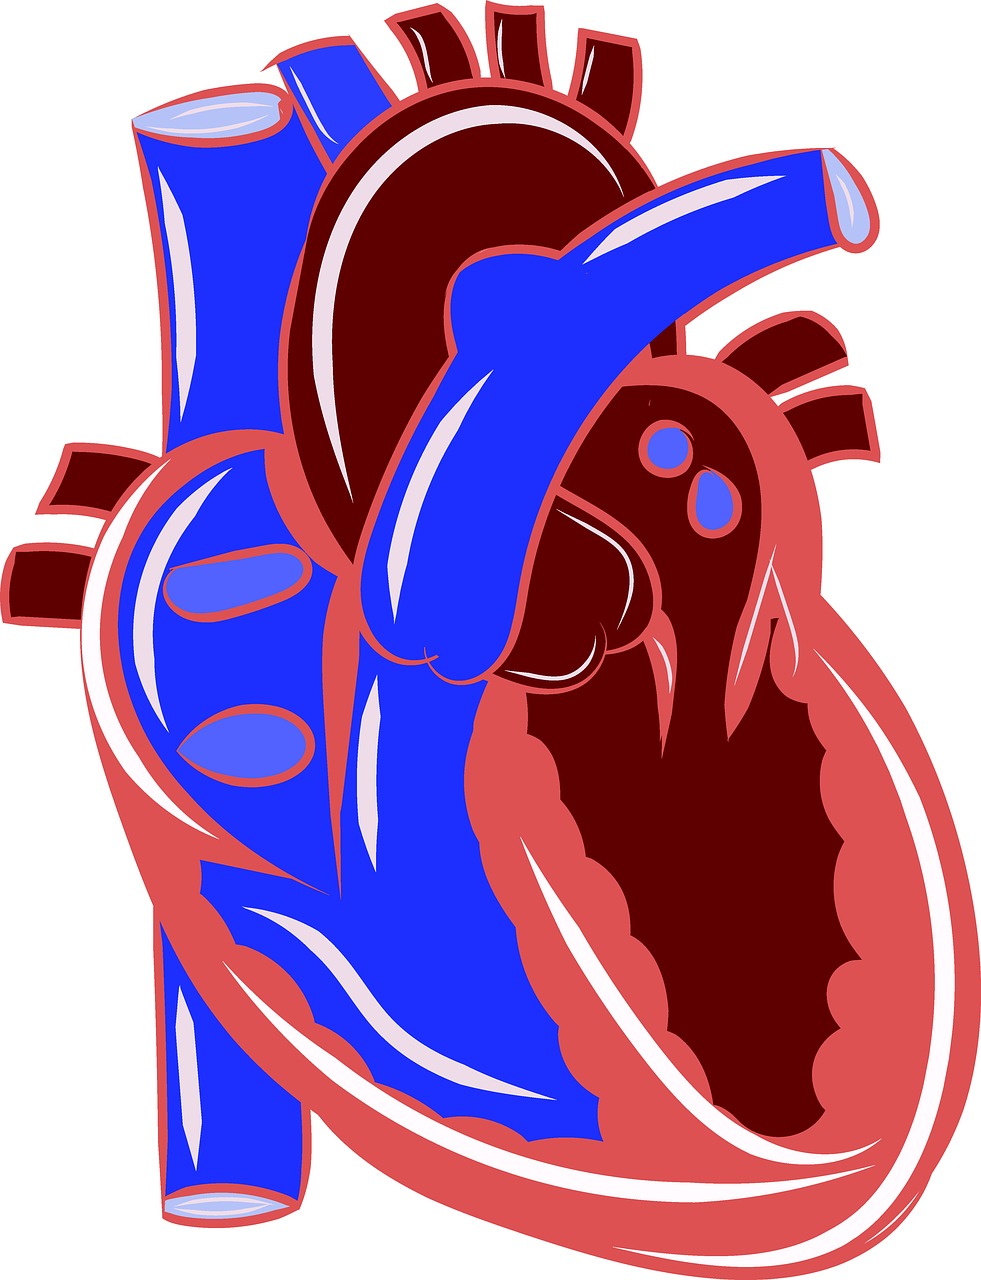 Širdis, Anatomija, Kraujotaka, Sveikata, Medicinos, Žmogus, Organas, Mokslas, Medicina, Biologija